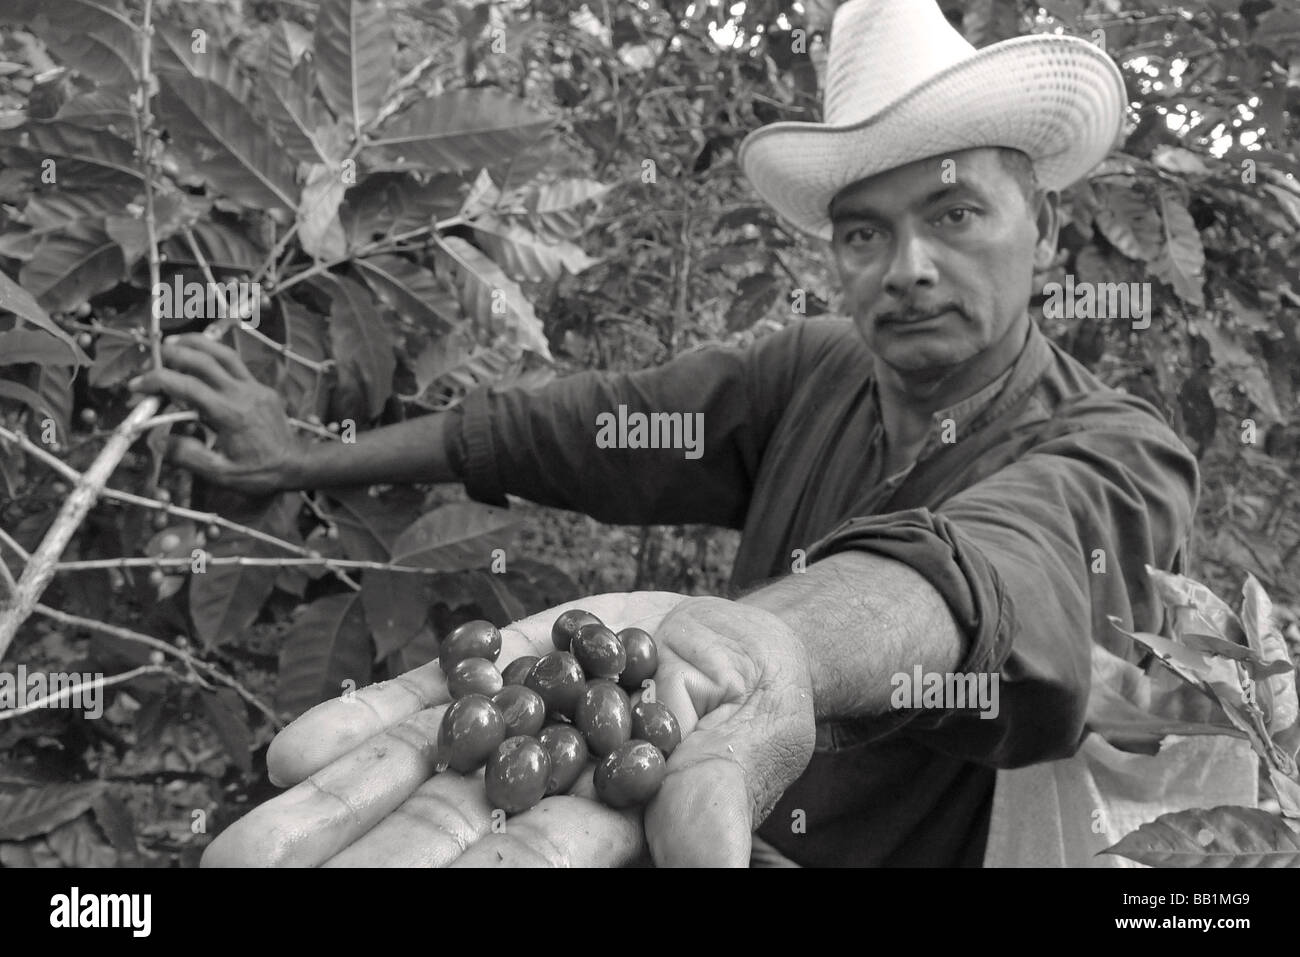 Nicaragua matagalpa central america latina latino caffè nicaraguense farm picker uomo lavoratore con il cappello da cowboy ritratto close up MR Foto Stock